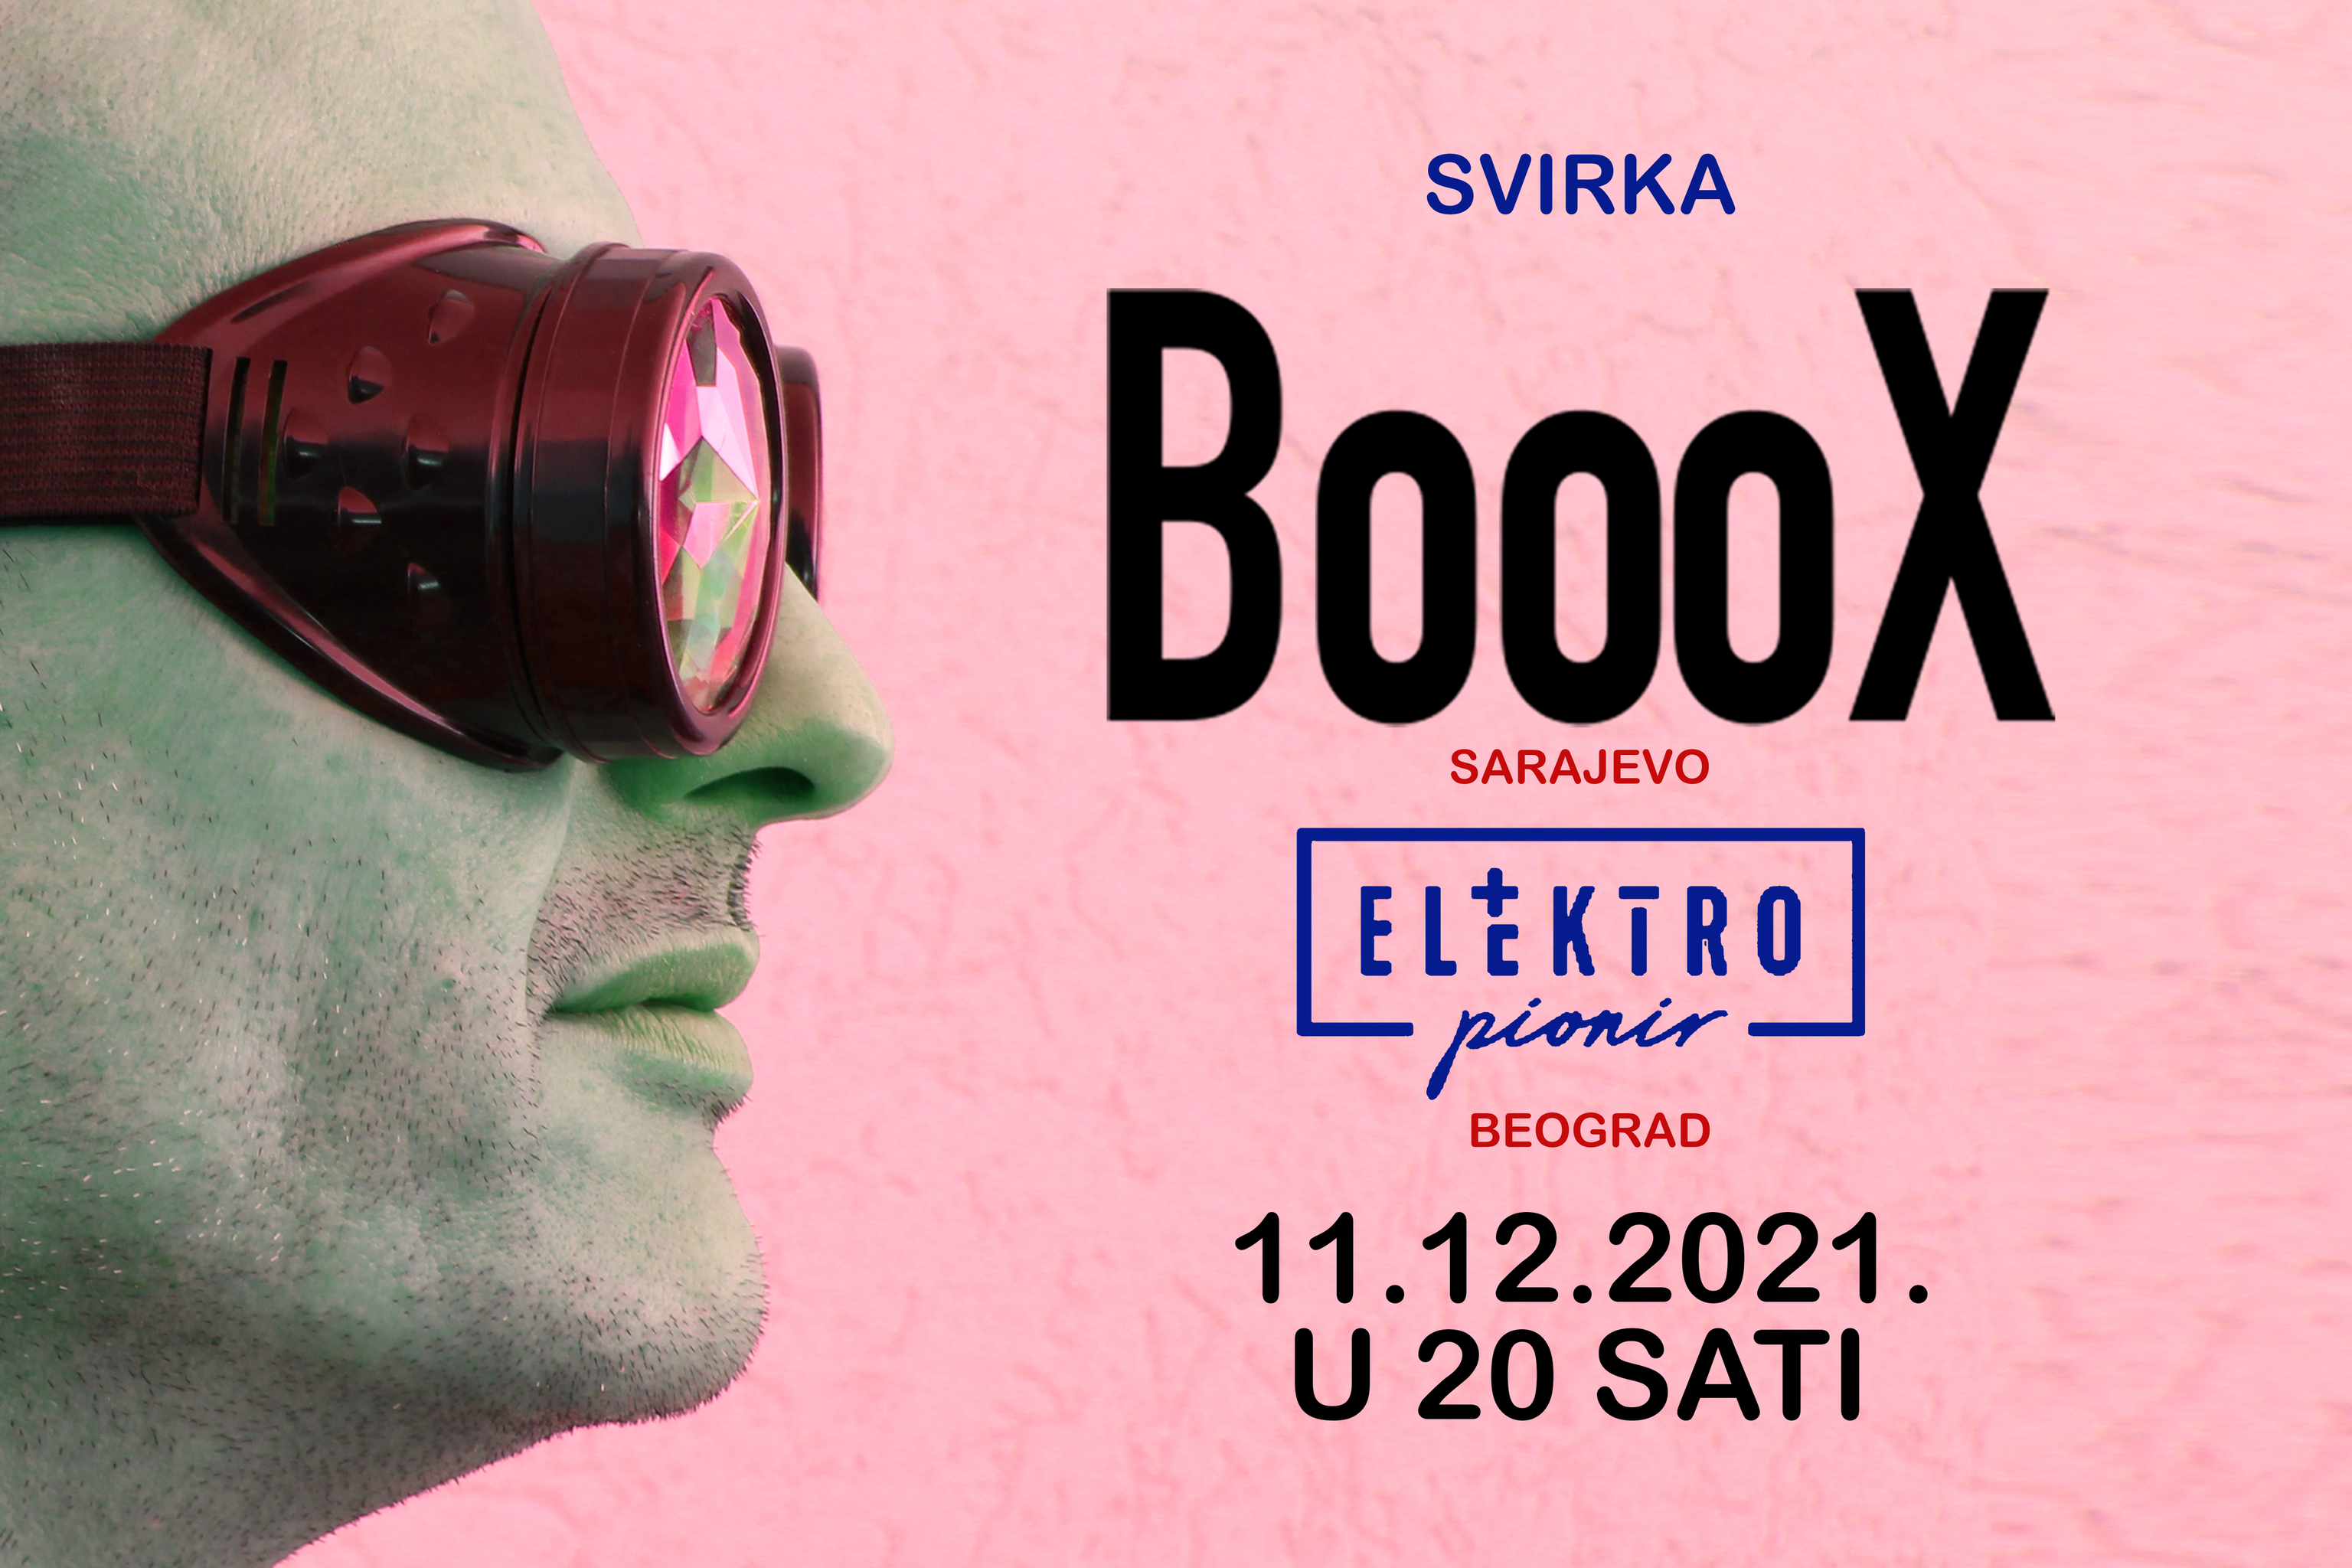 Sarajevski bend Booox u beogradskom klubu “Elektro pionir”